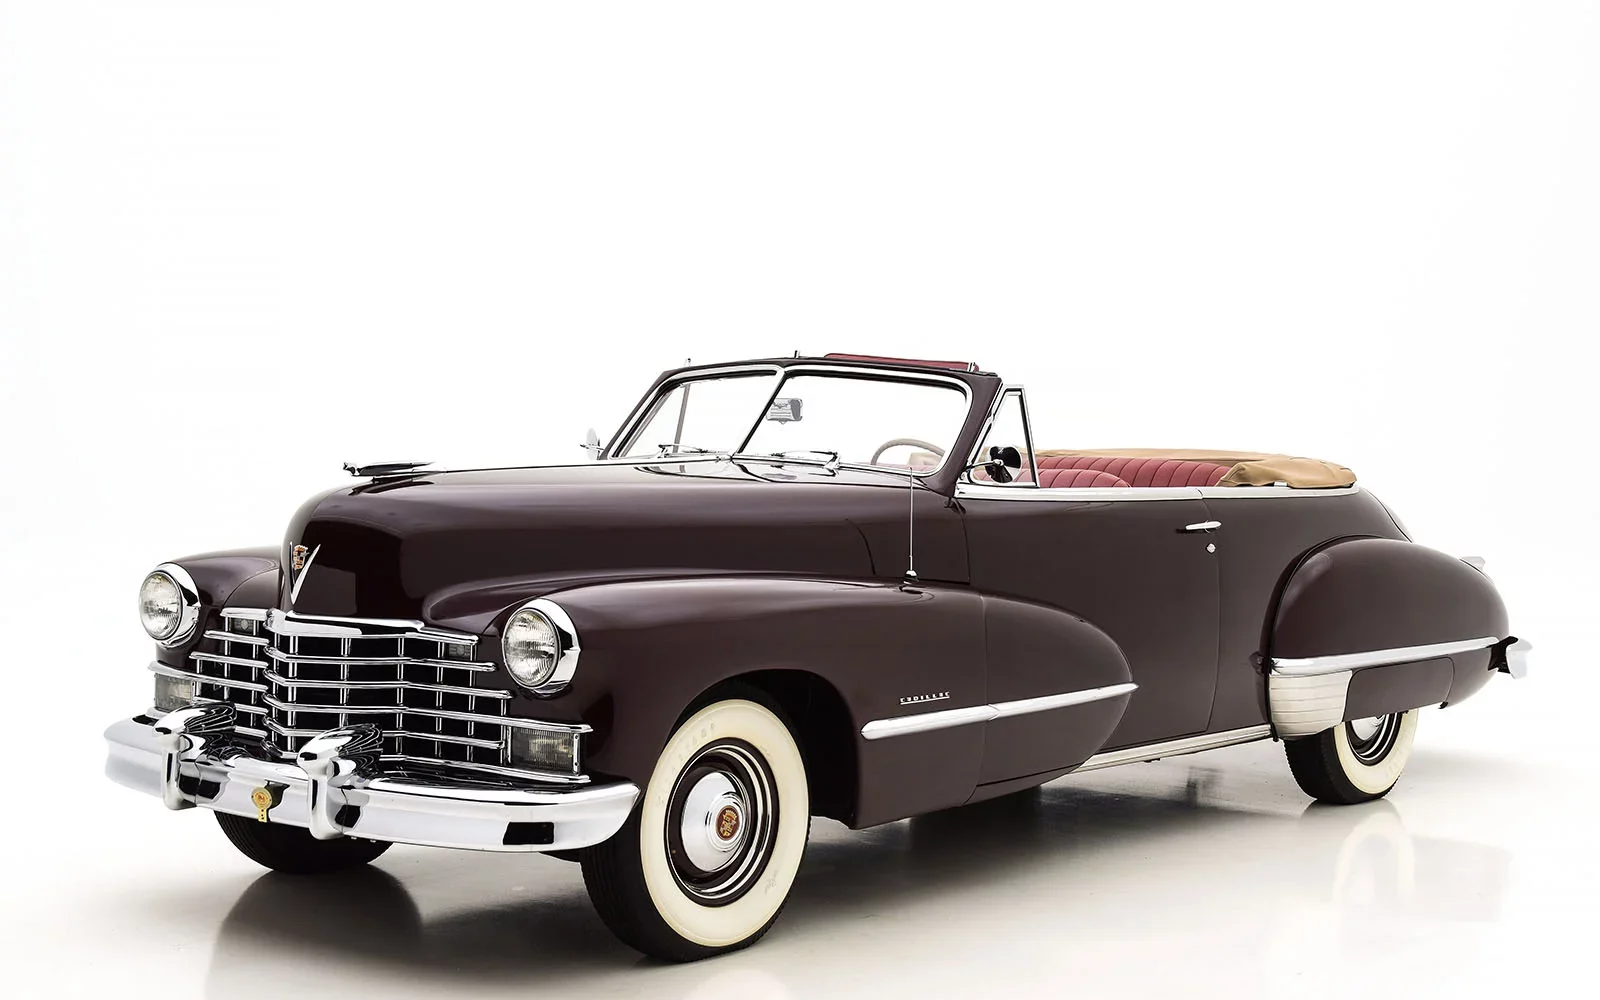 1946 Cadillac Series 62 Convertible Coupe, cadillac, Cadillac Series 62